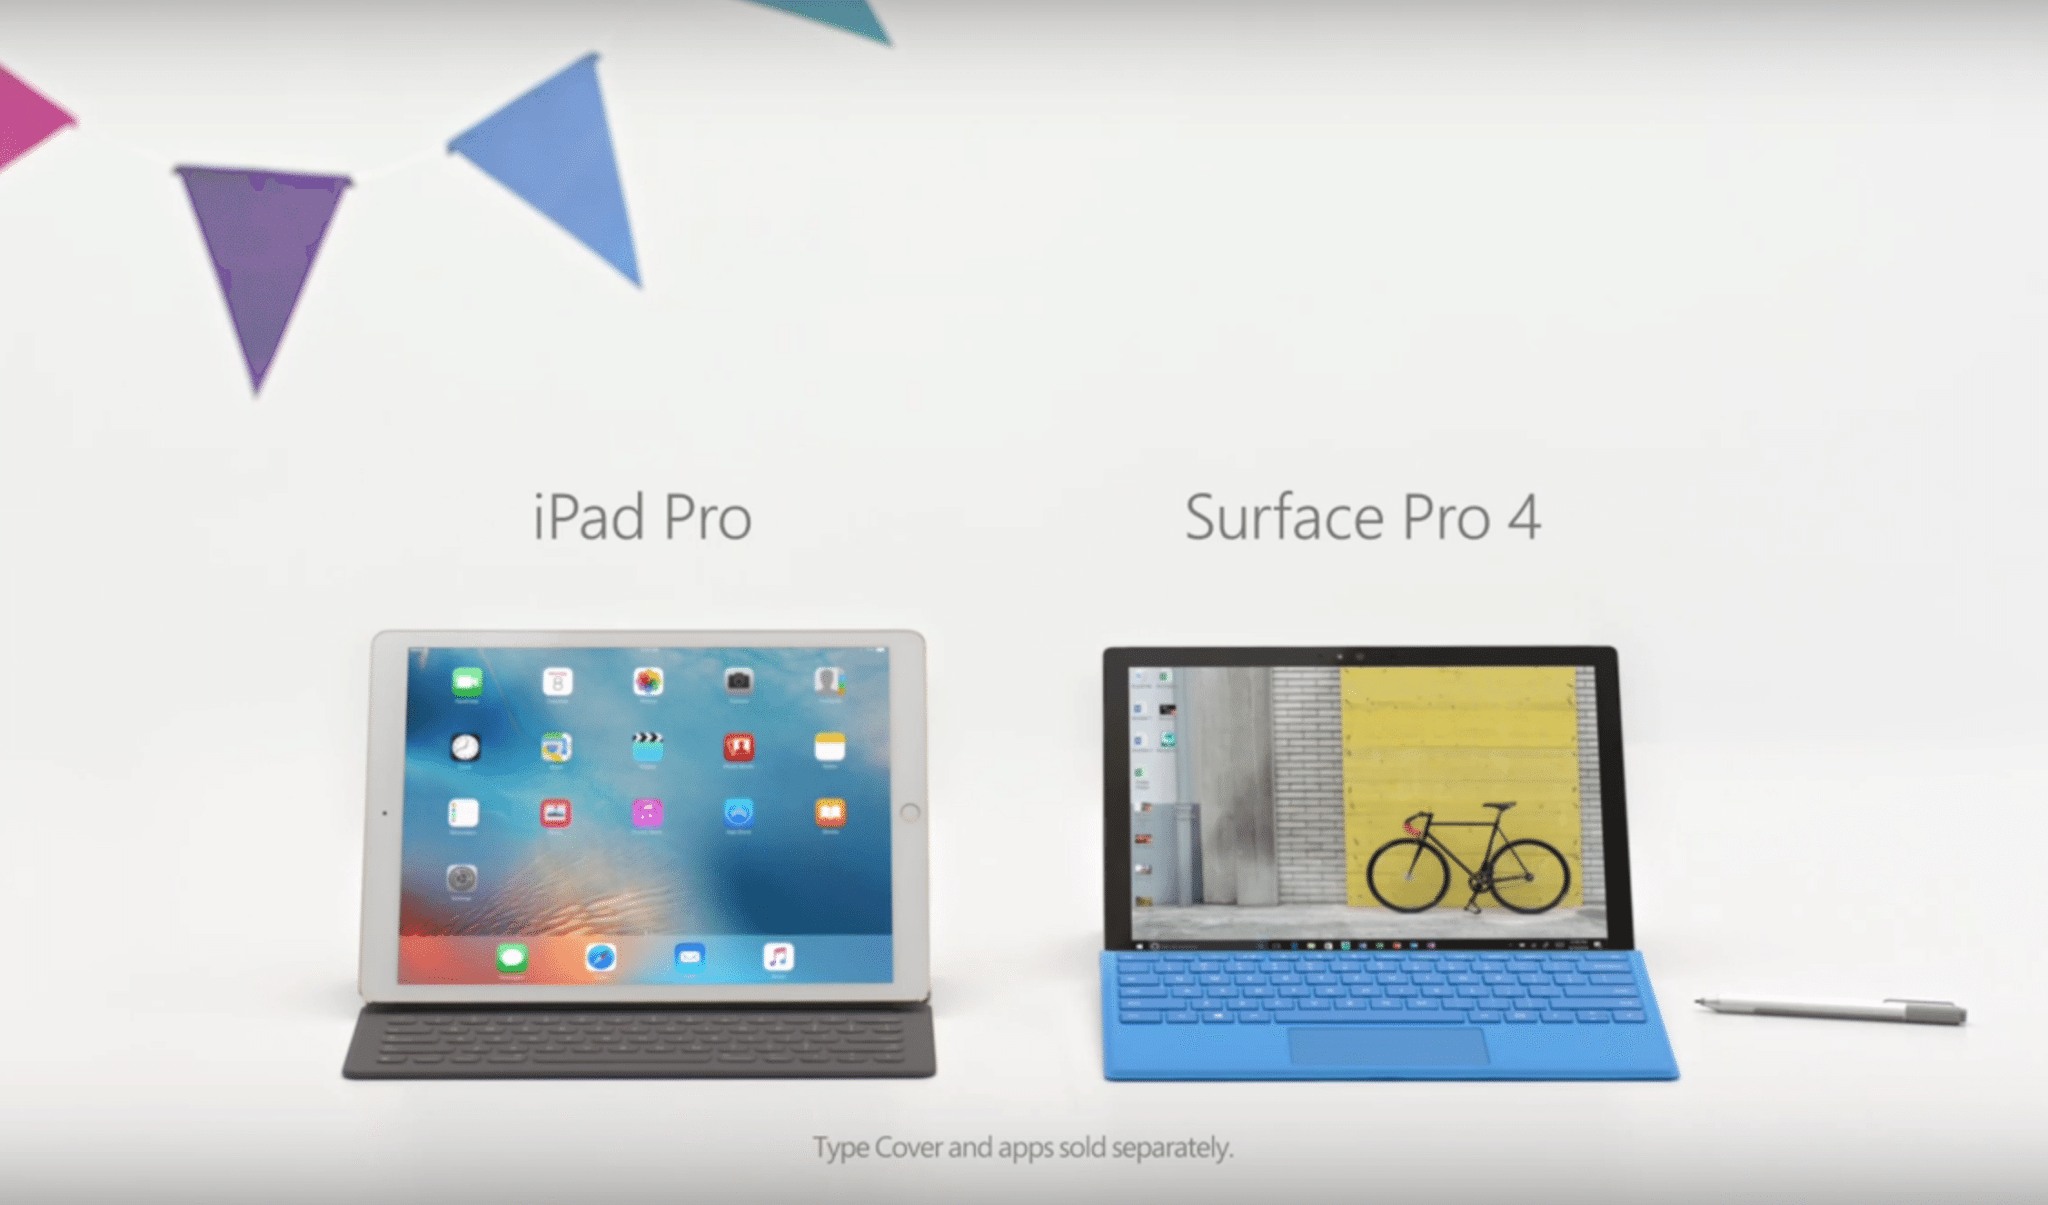 مايكروسوفت تهزأ من iPad Pro بقوّة في إعلان جديد